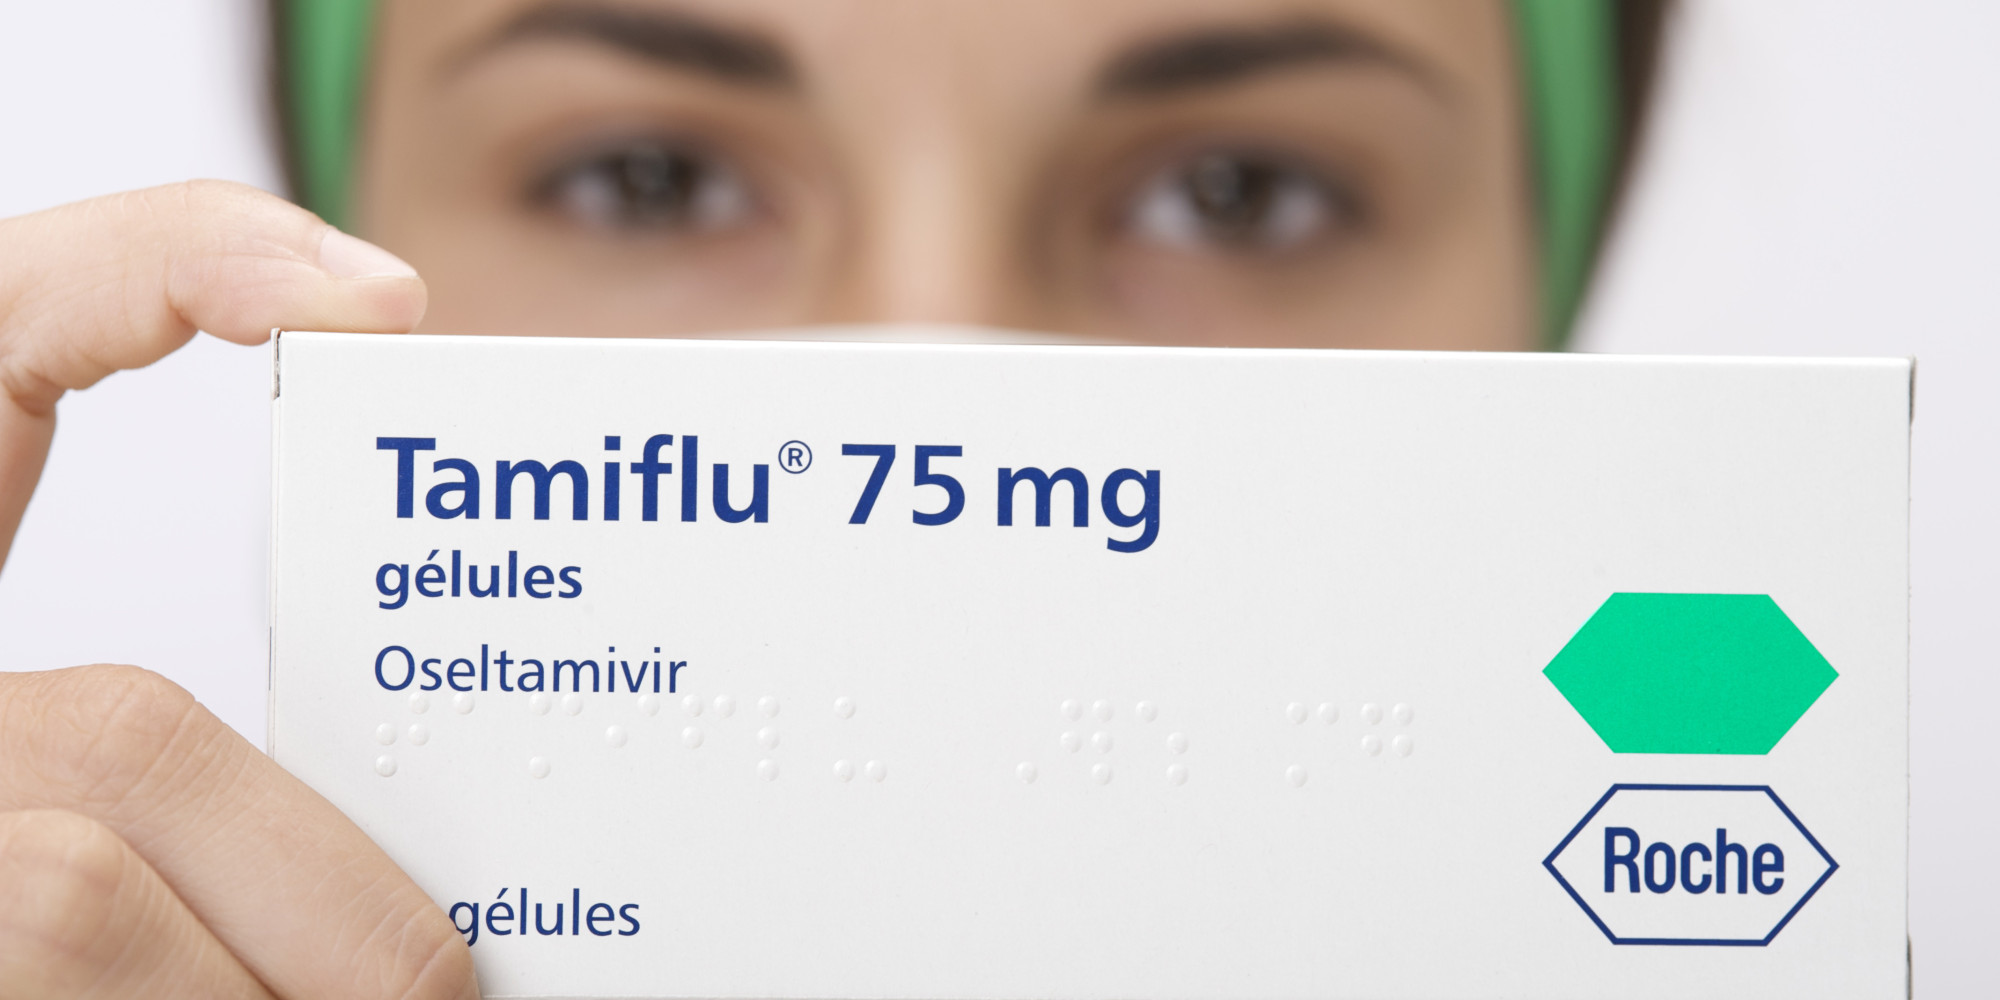 استخدام التاميفلو أثناء الحمل